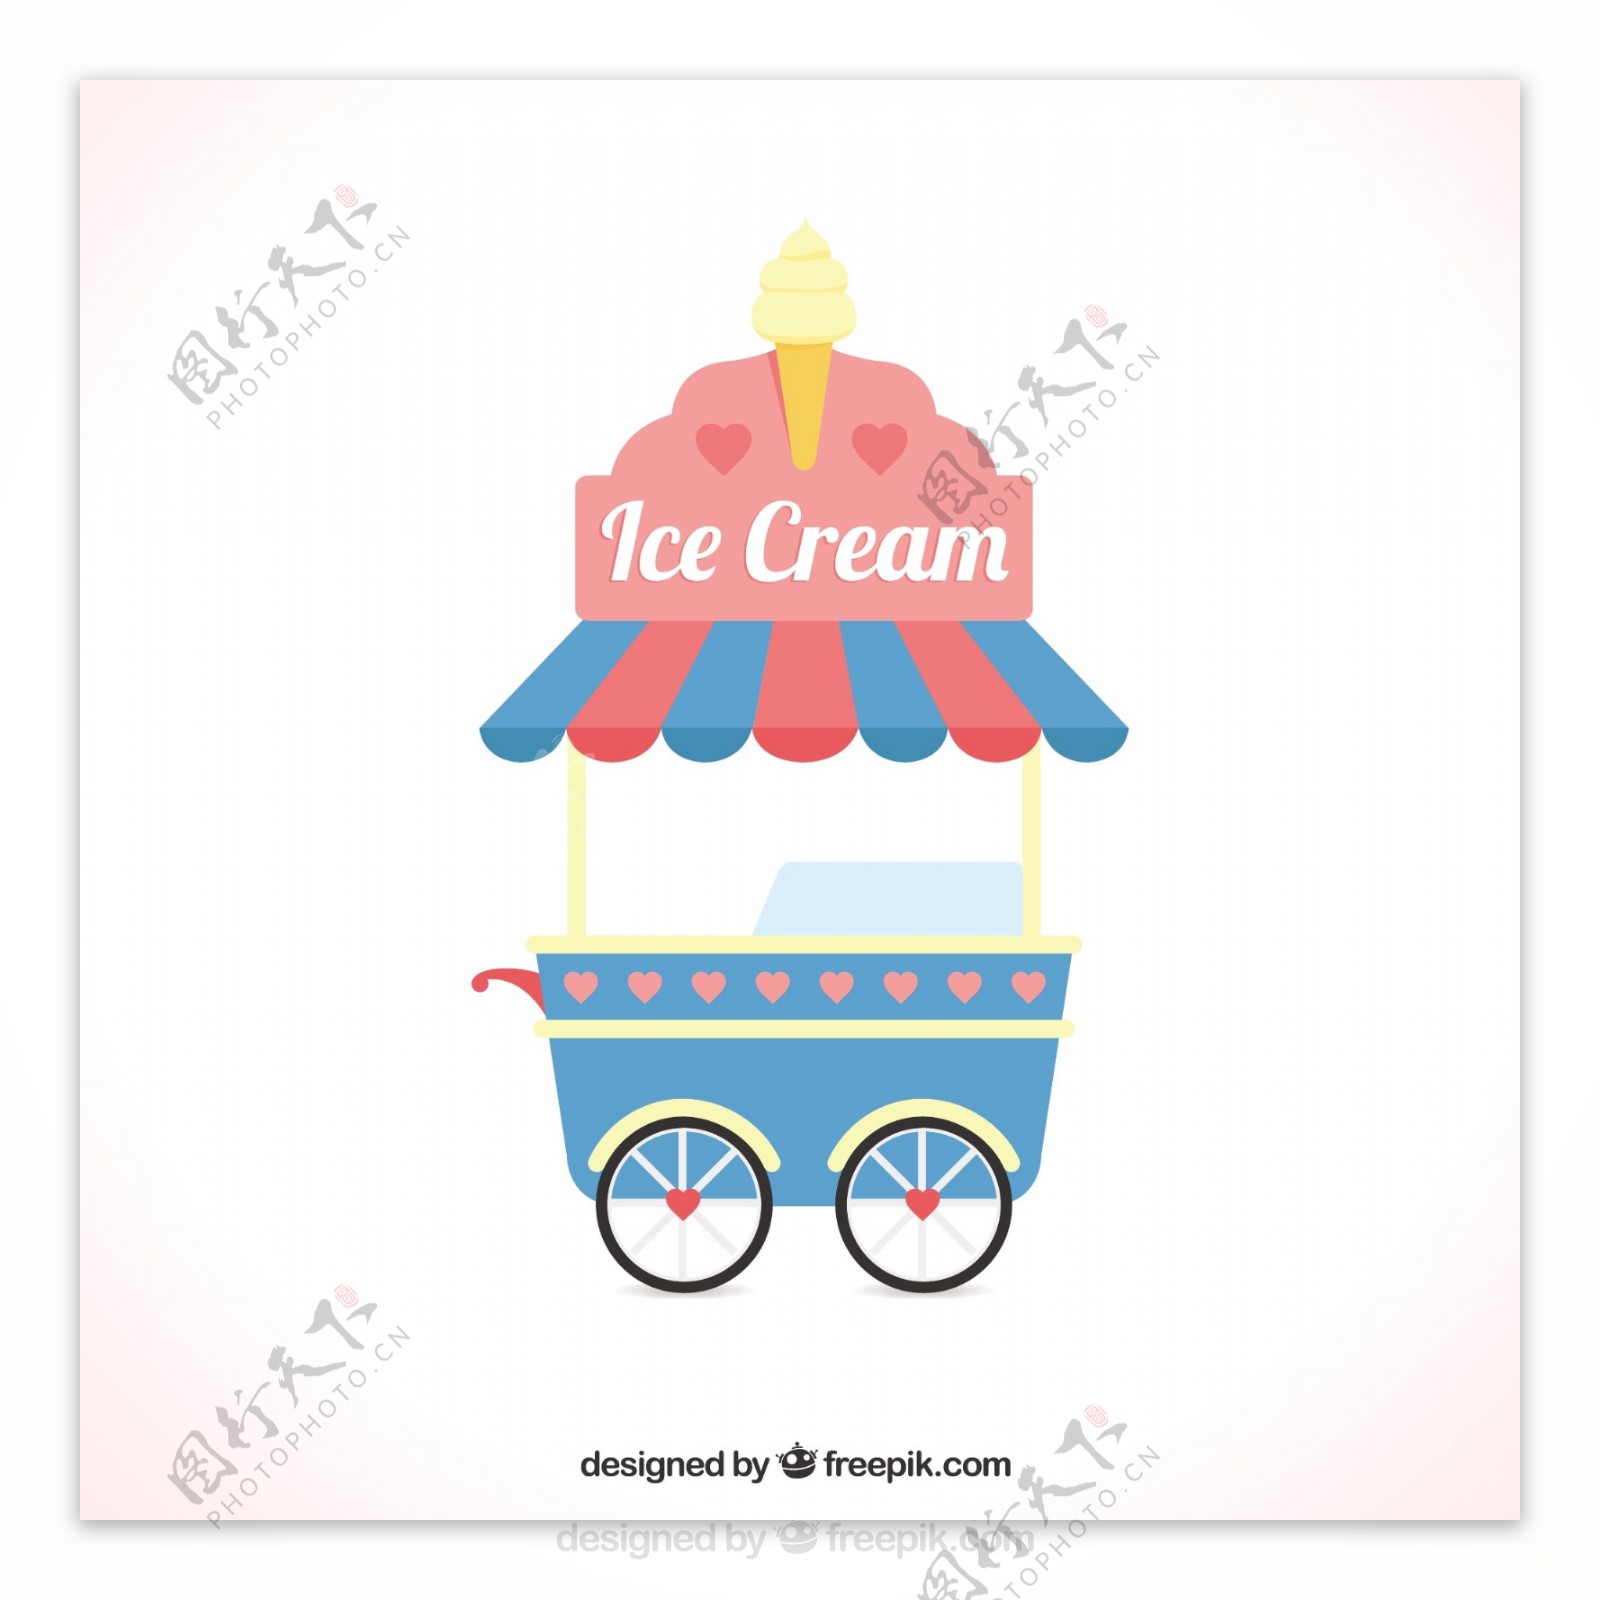 冰淇淋车